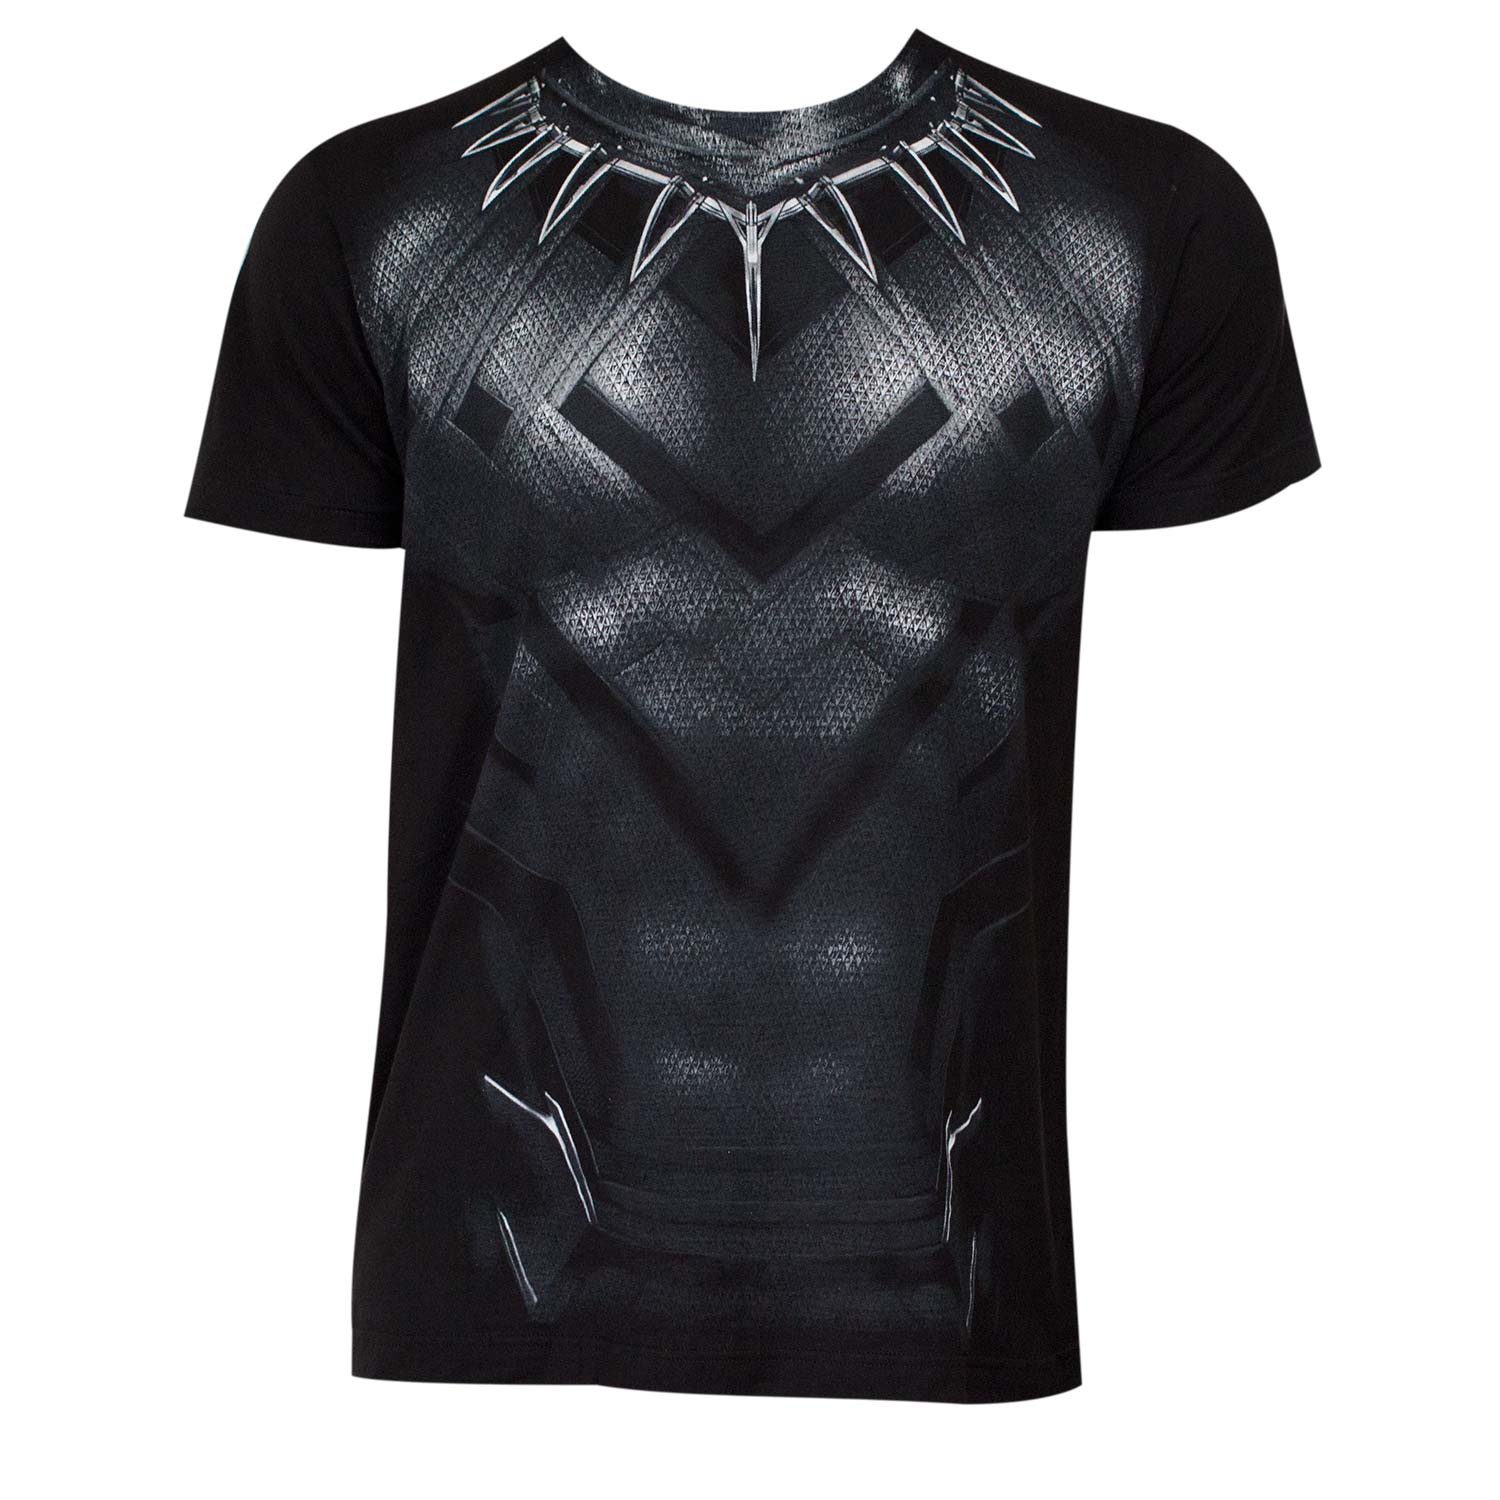 Captain America Civil War Black Panther Movie Suit Men's Costume T-Shirt